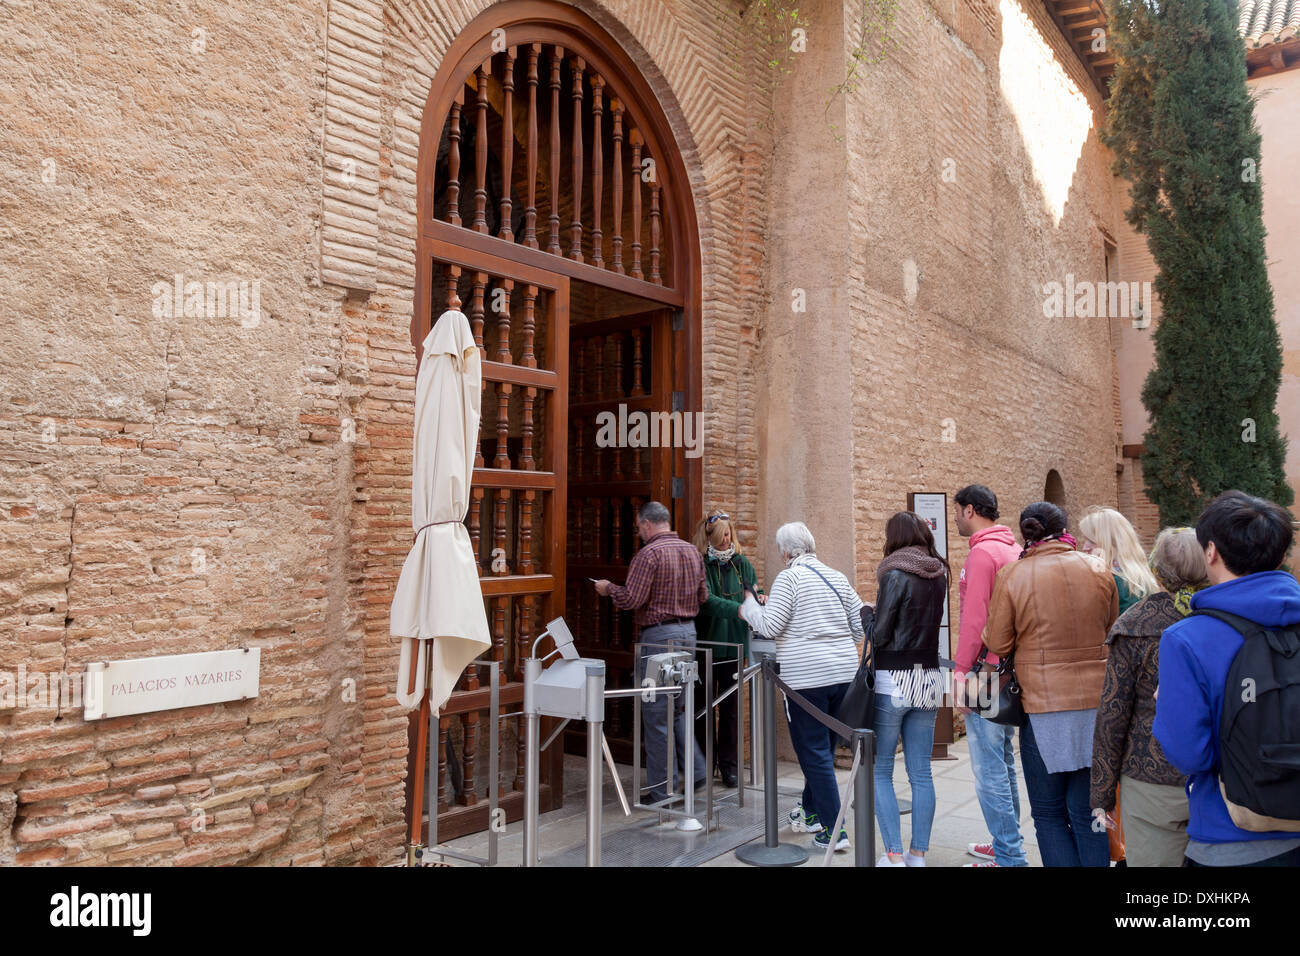 Visiteurs en attente à l'entrée du Palais Nasrides ; le Palais de l'Alhambra, Grenade, Andalousie Espagne Europe Banque D'Images